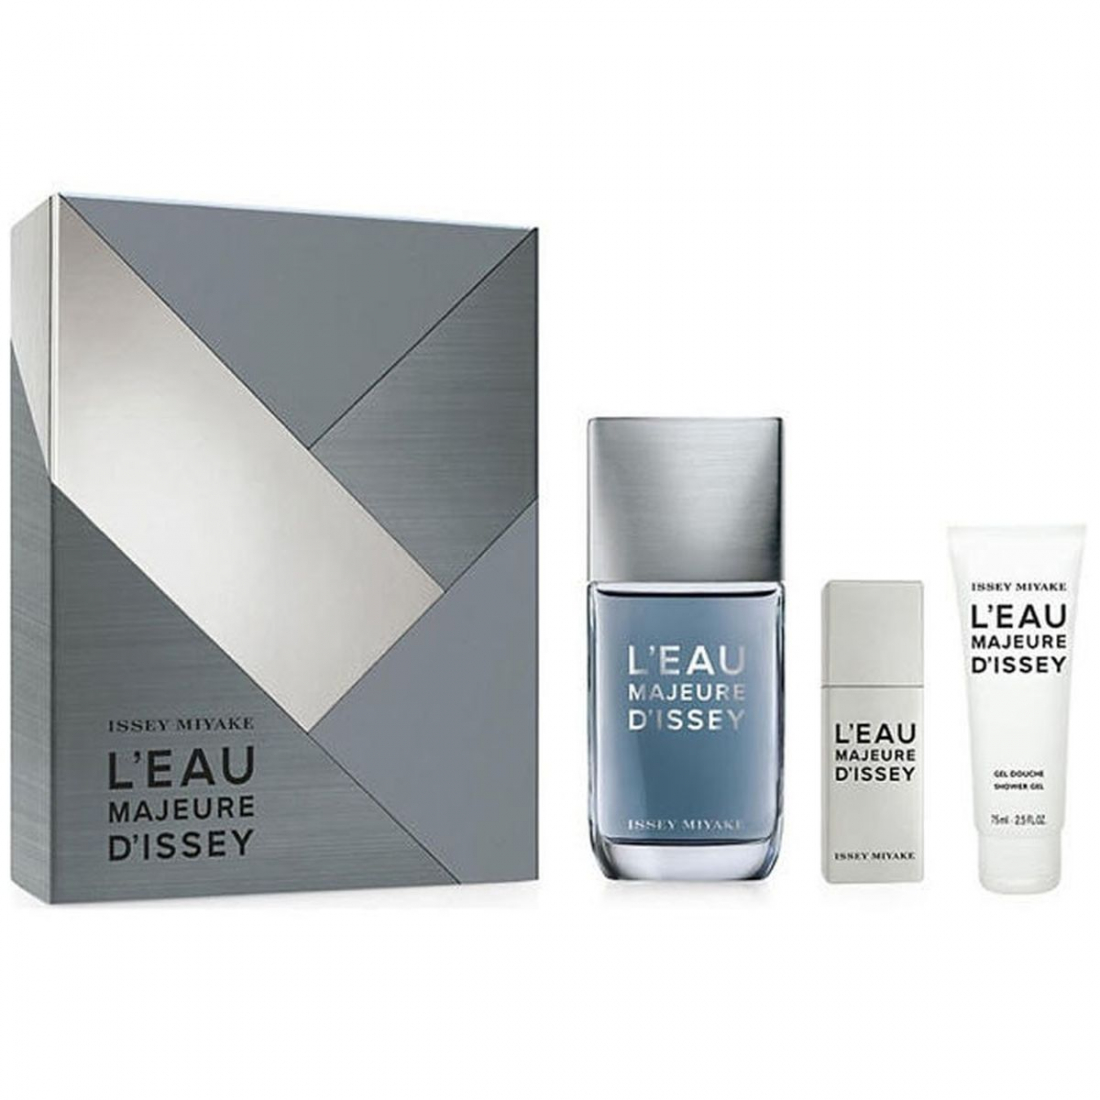 'L'Eau Majeure' Perfume Set - 3 Pieces